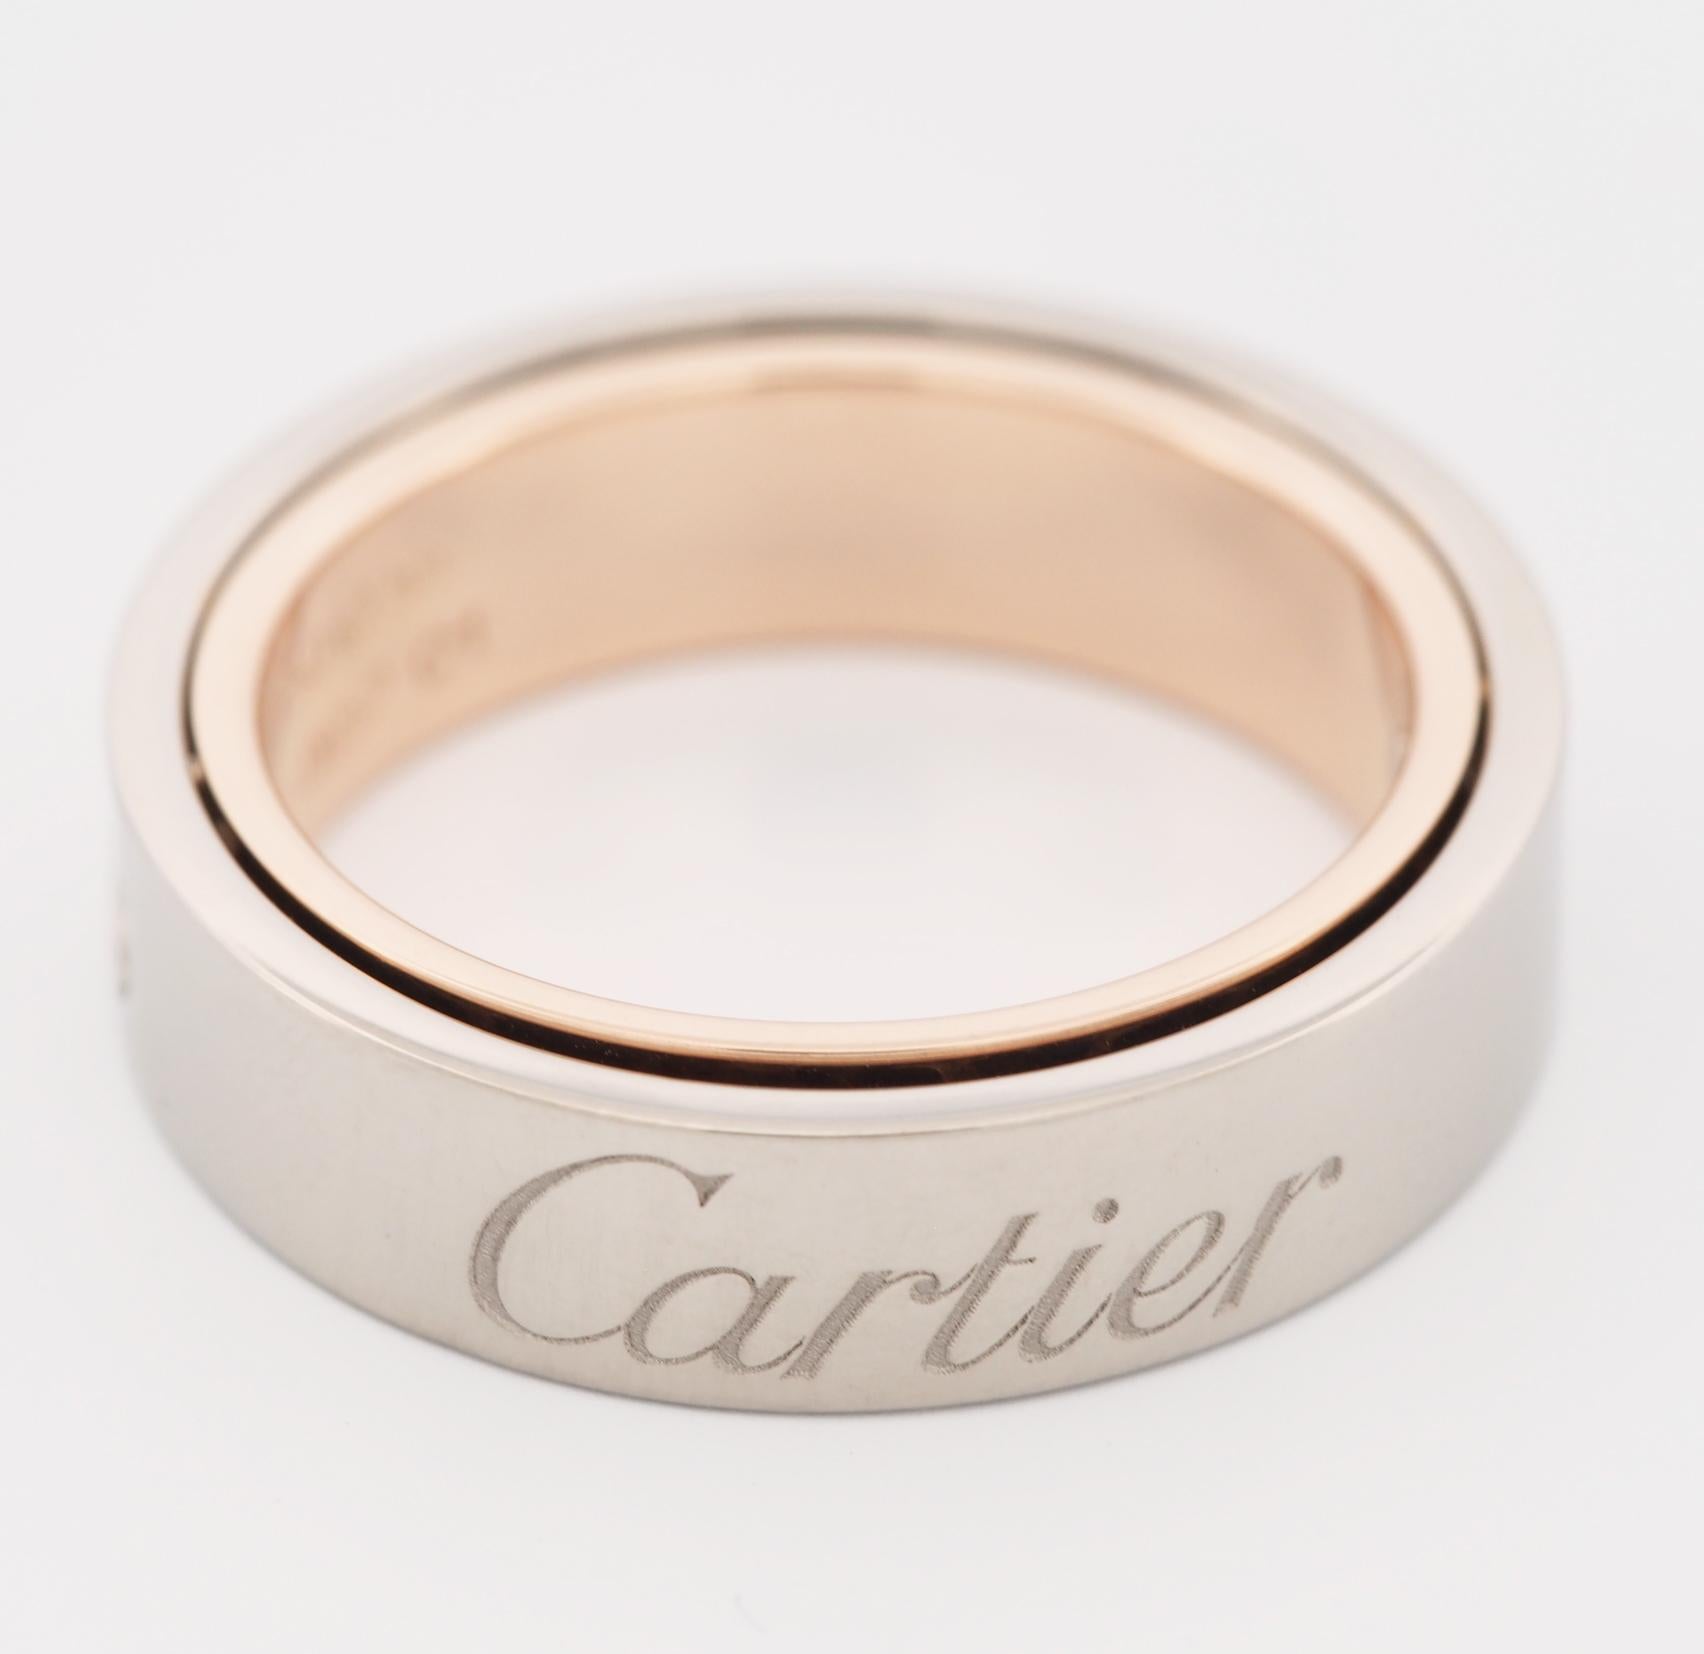 Cartier, bague Love Secret Ring en or rose et blanc 55, 2005, édition limitée 3